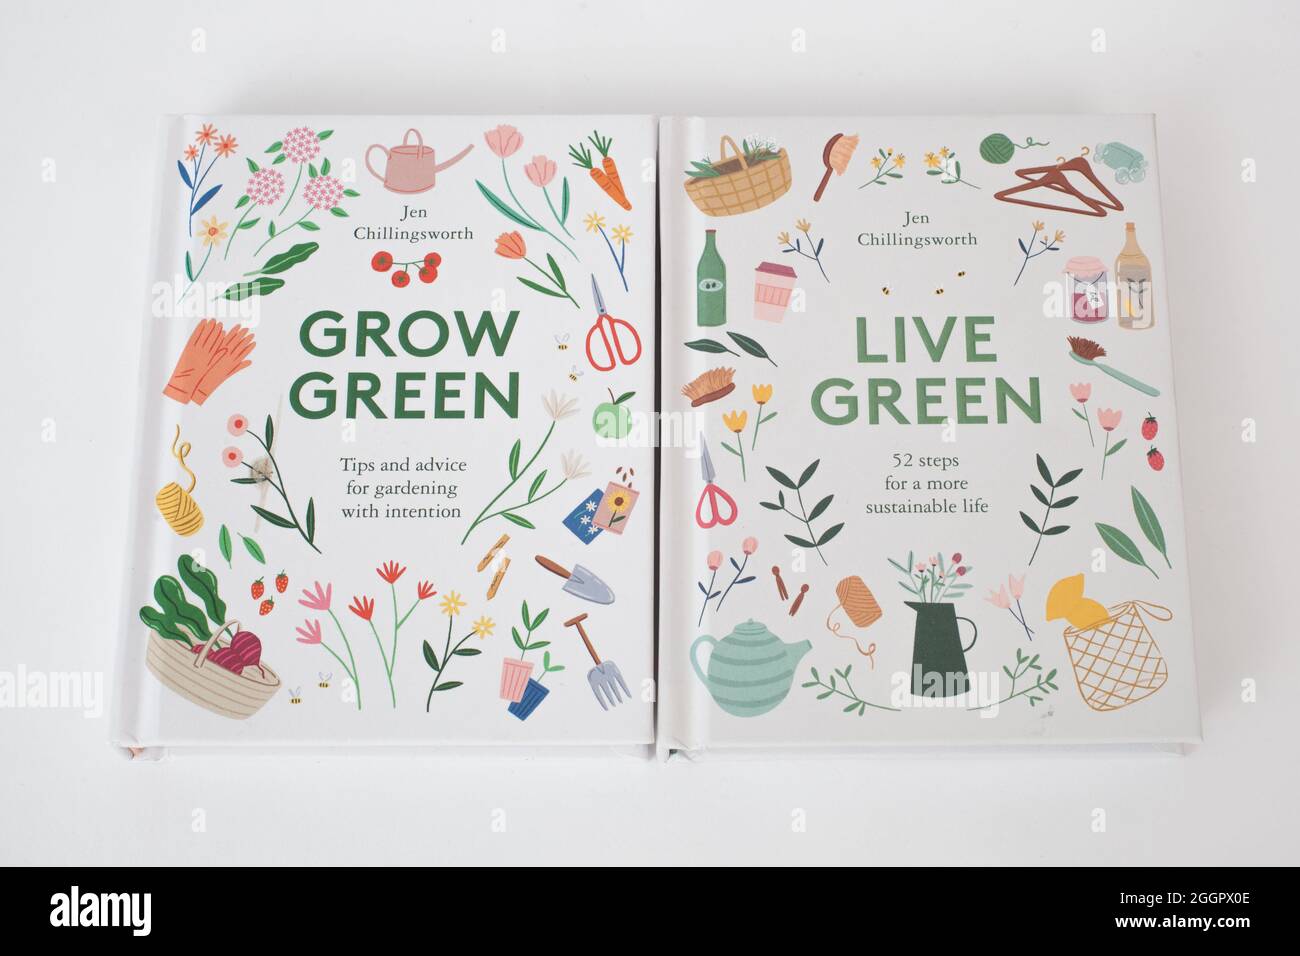 Les livres, Grow Green et Live Green par Jen Chilingworth Banque D'Images